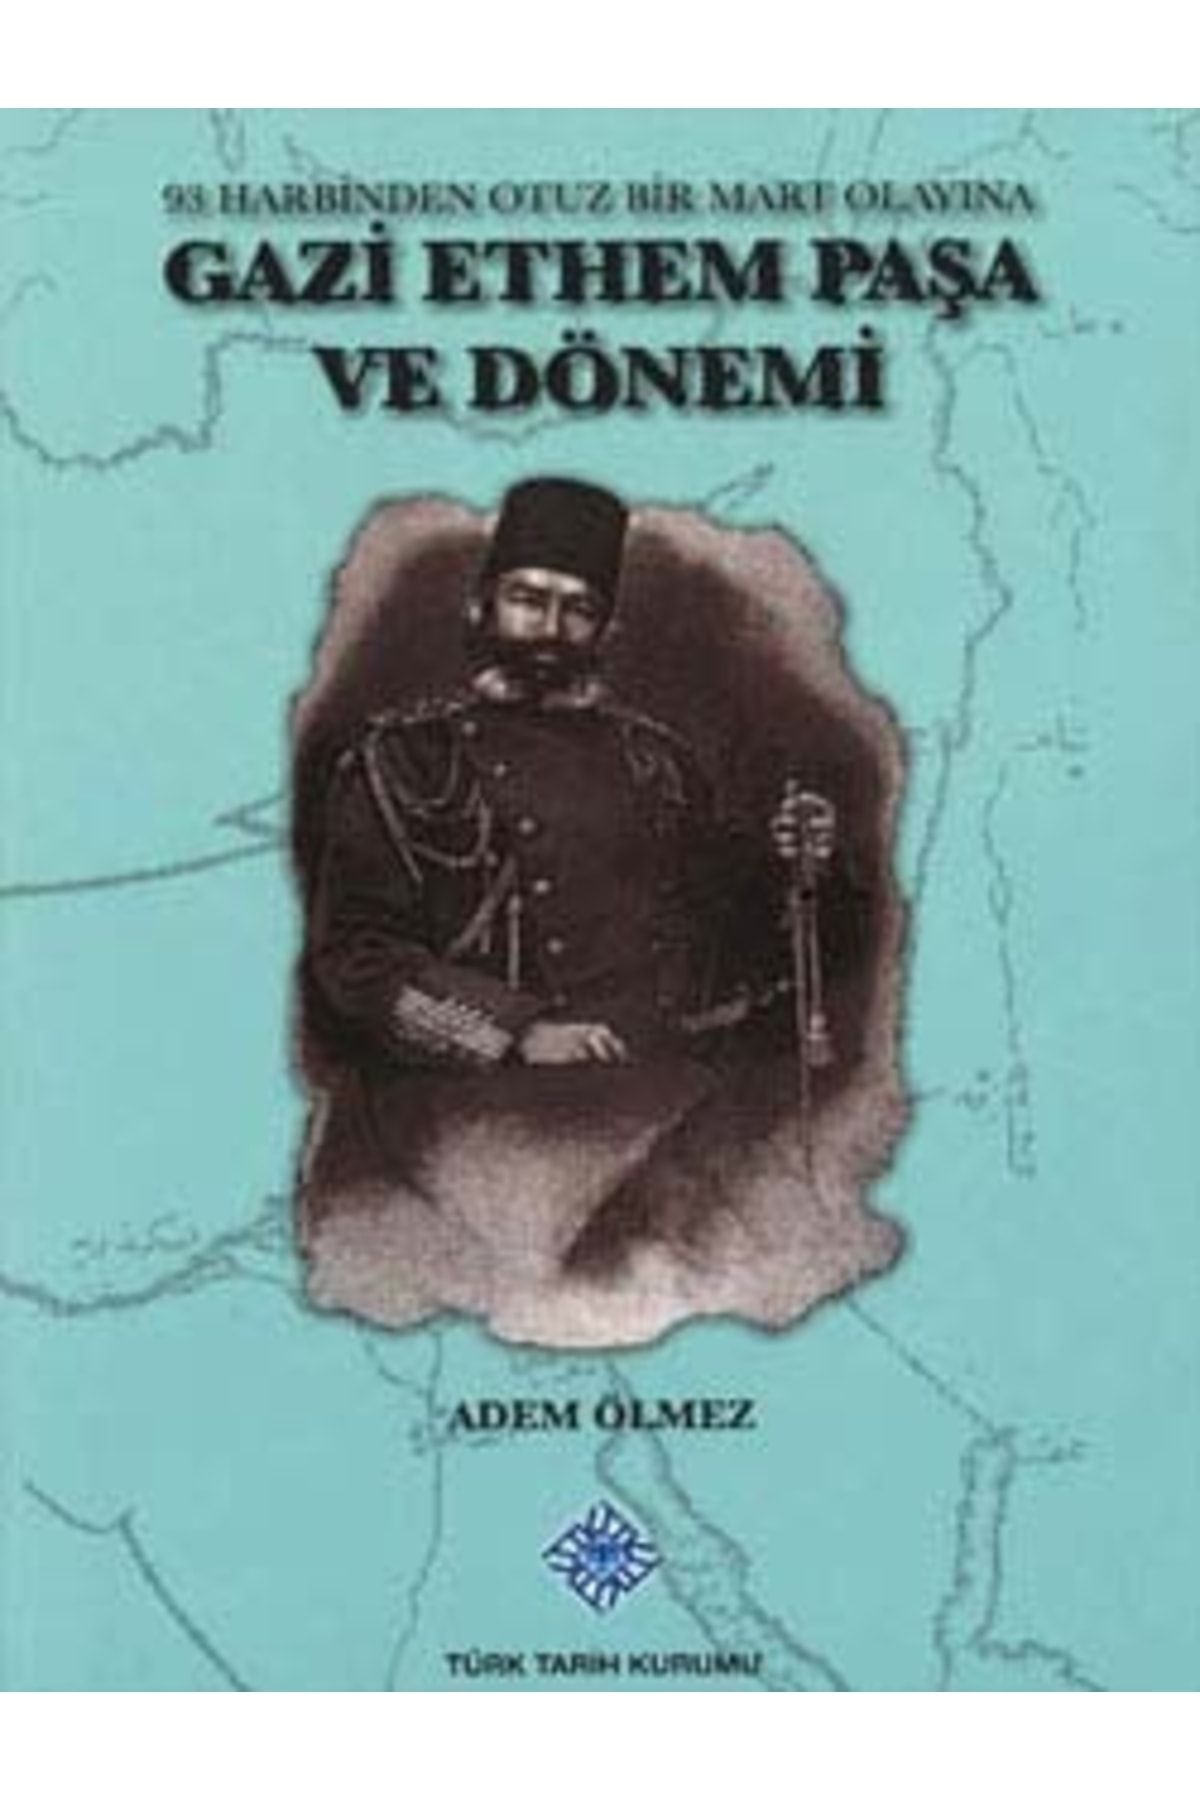 Türk Tarih Kurumu Yayınları Gazi Ethem Paşa Ve Dönemi (93 Harbinden Otuz Bir Mart Olayına), 2013